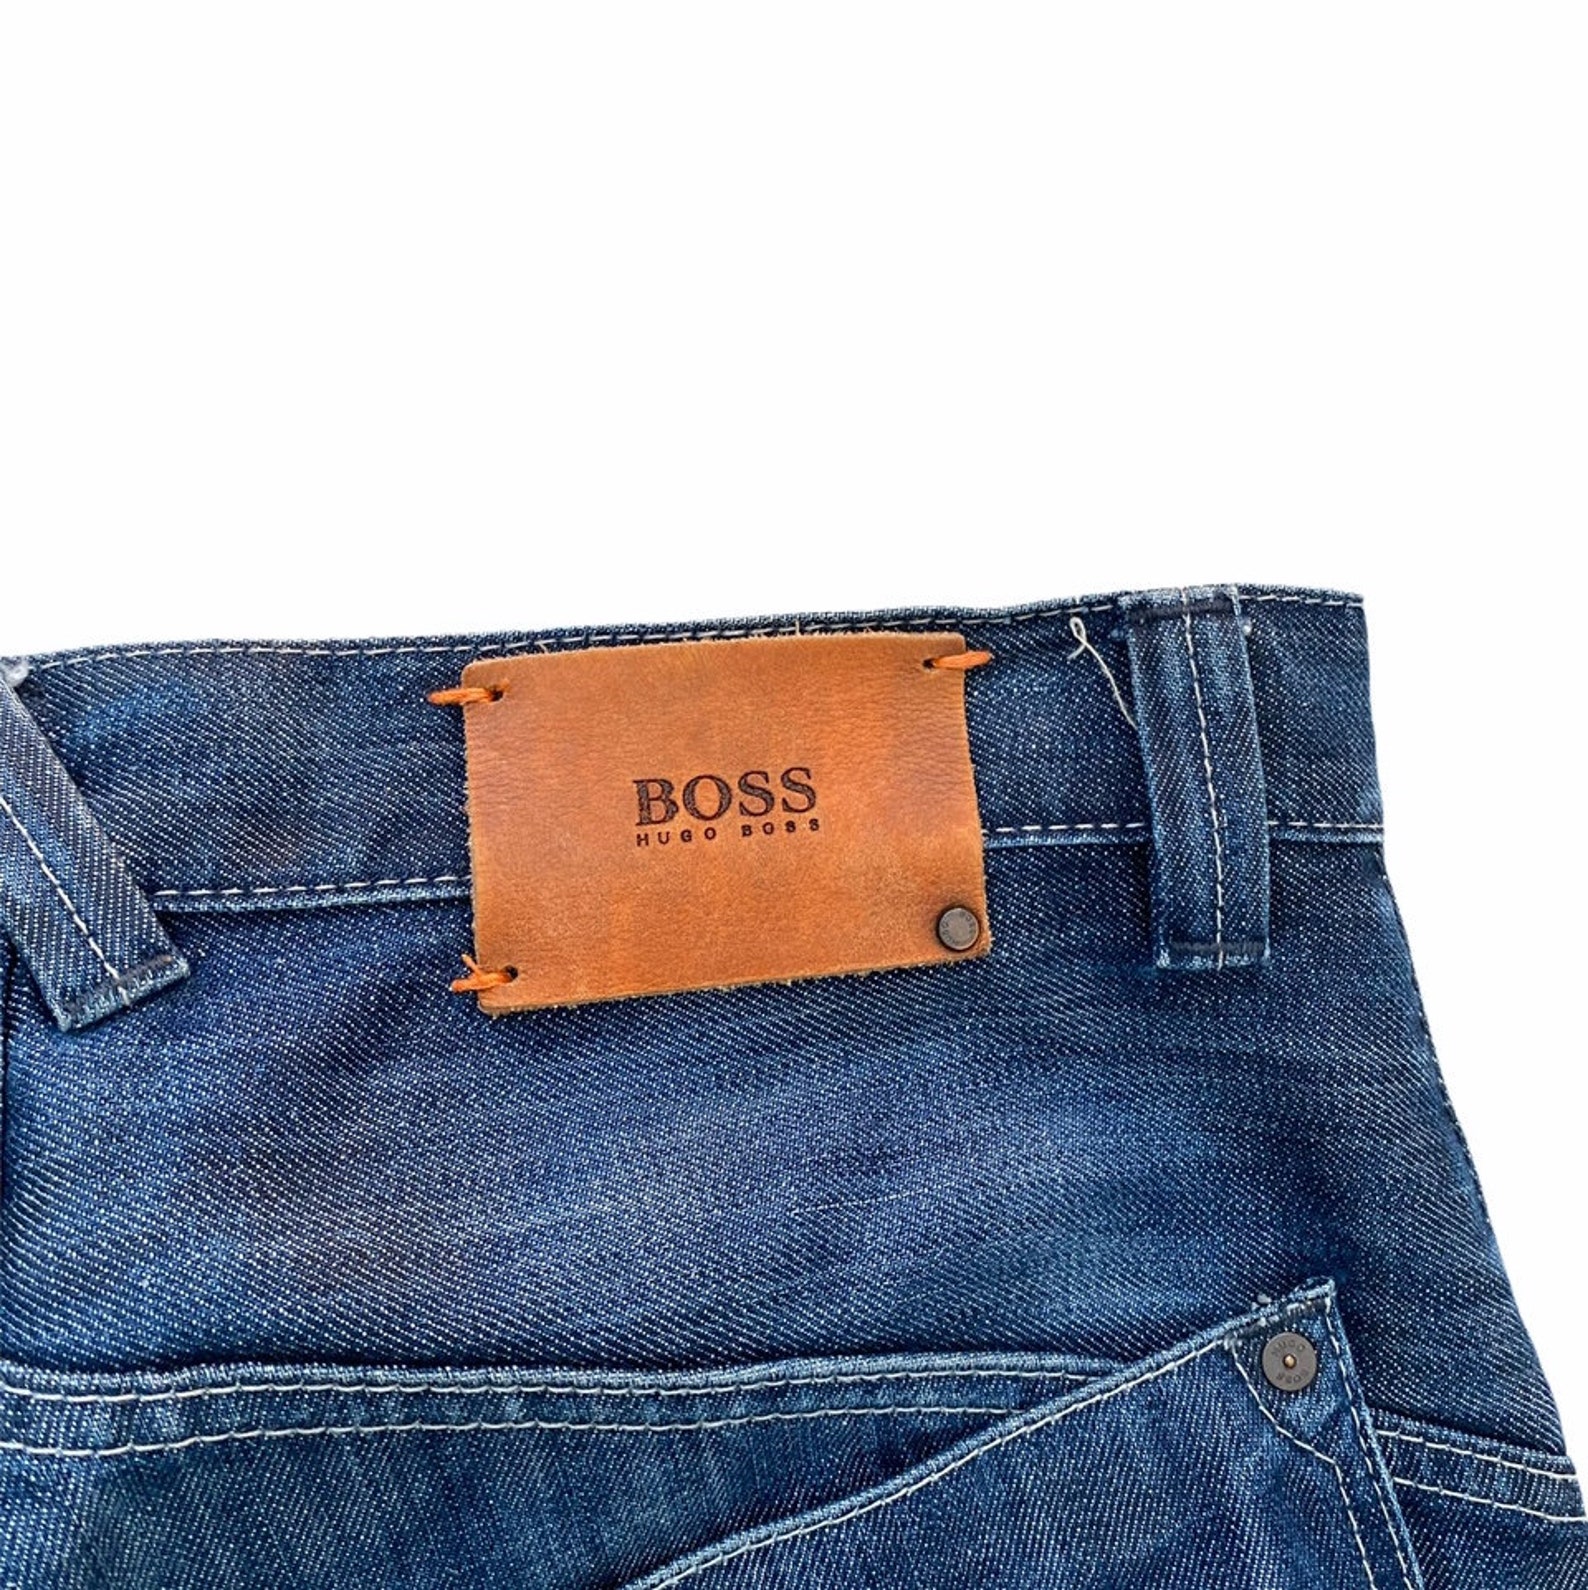 Hugo Boss Denim Jeans - Etsy UK